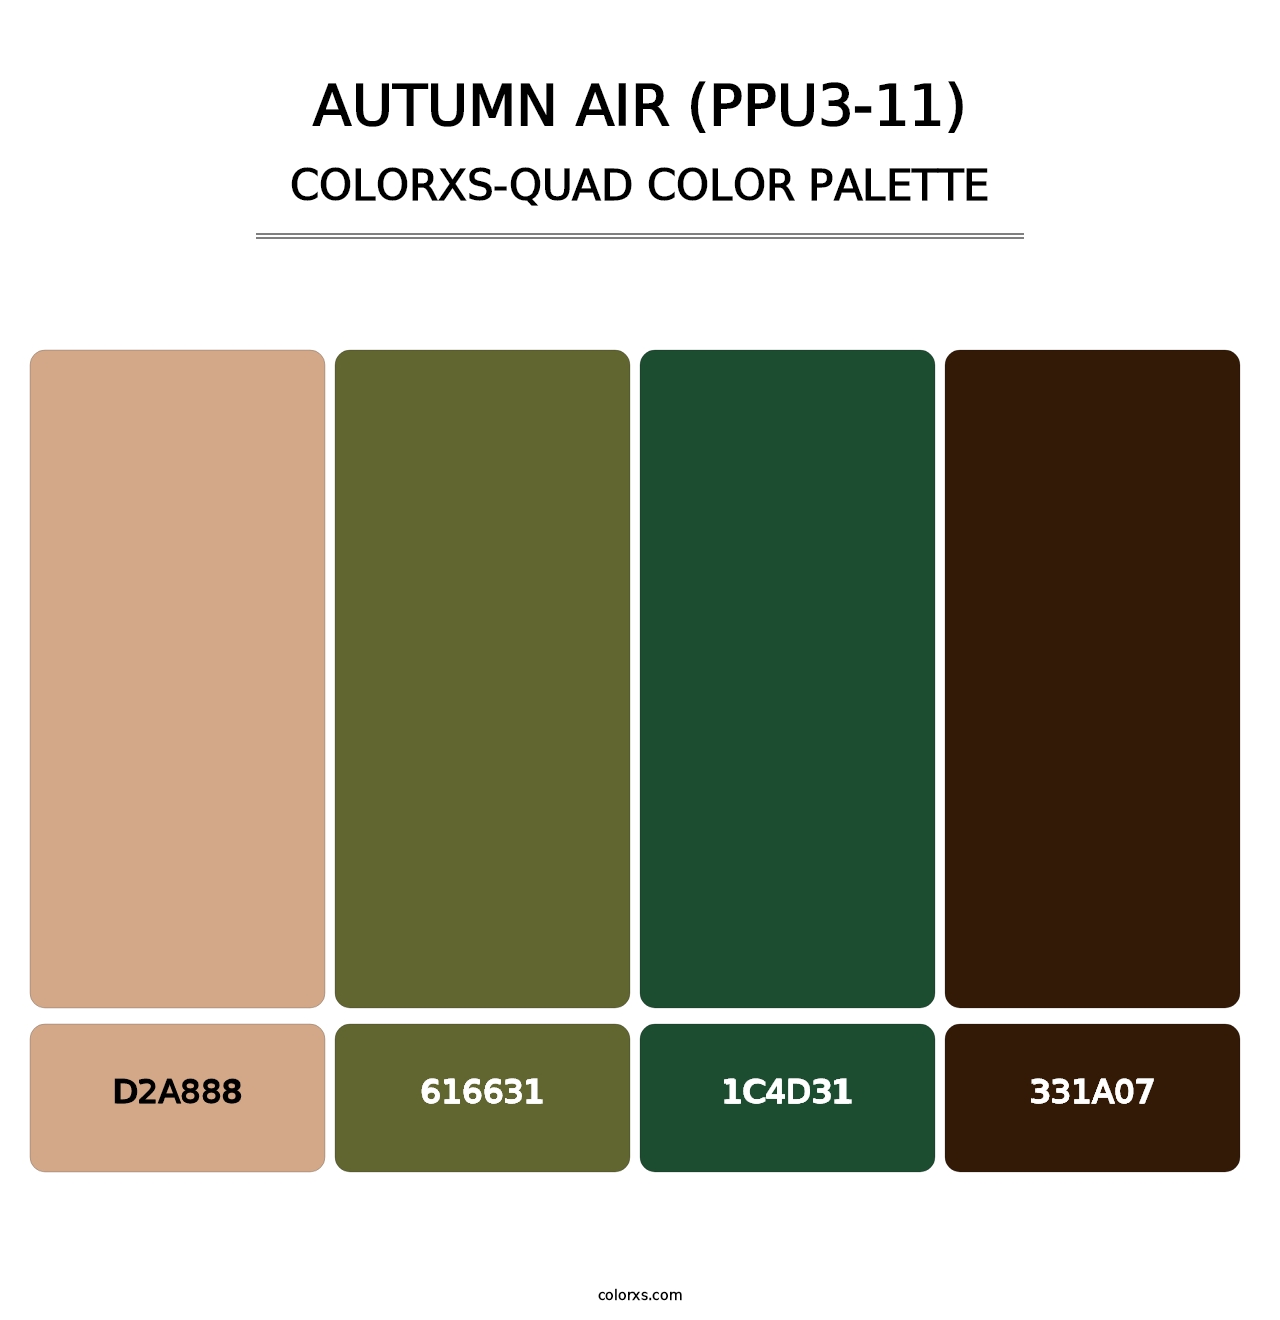 Autumn Air (PPU3-11) - Colorxs Quad Palette